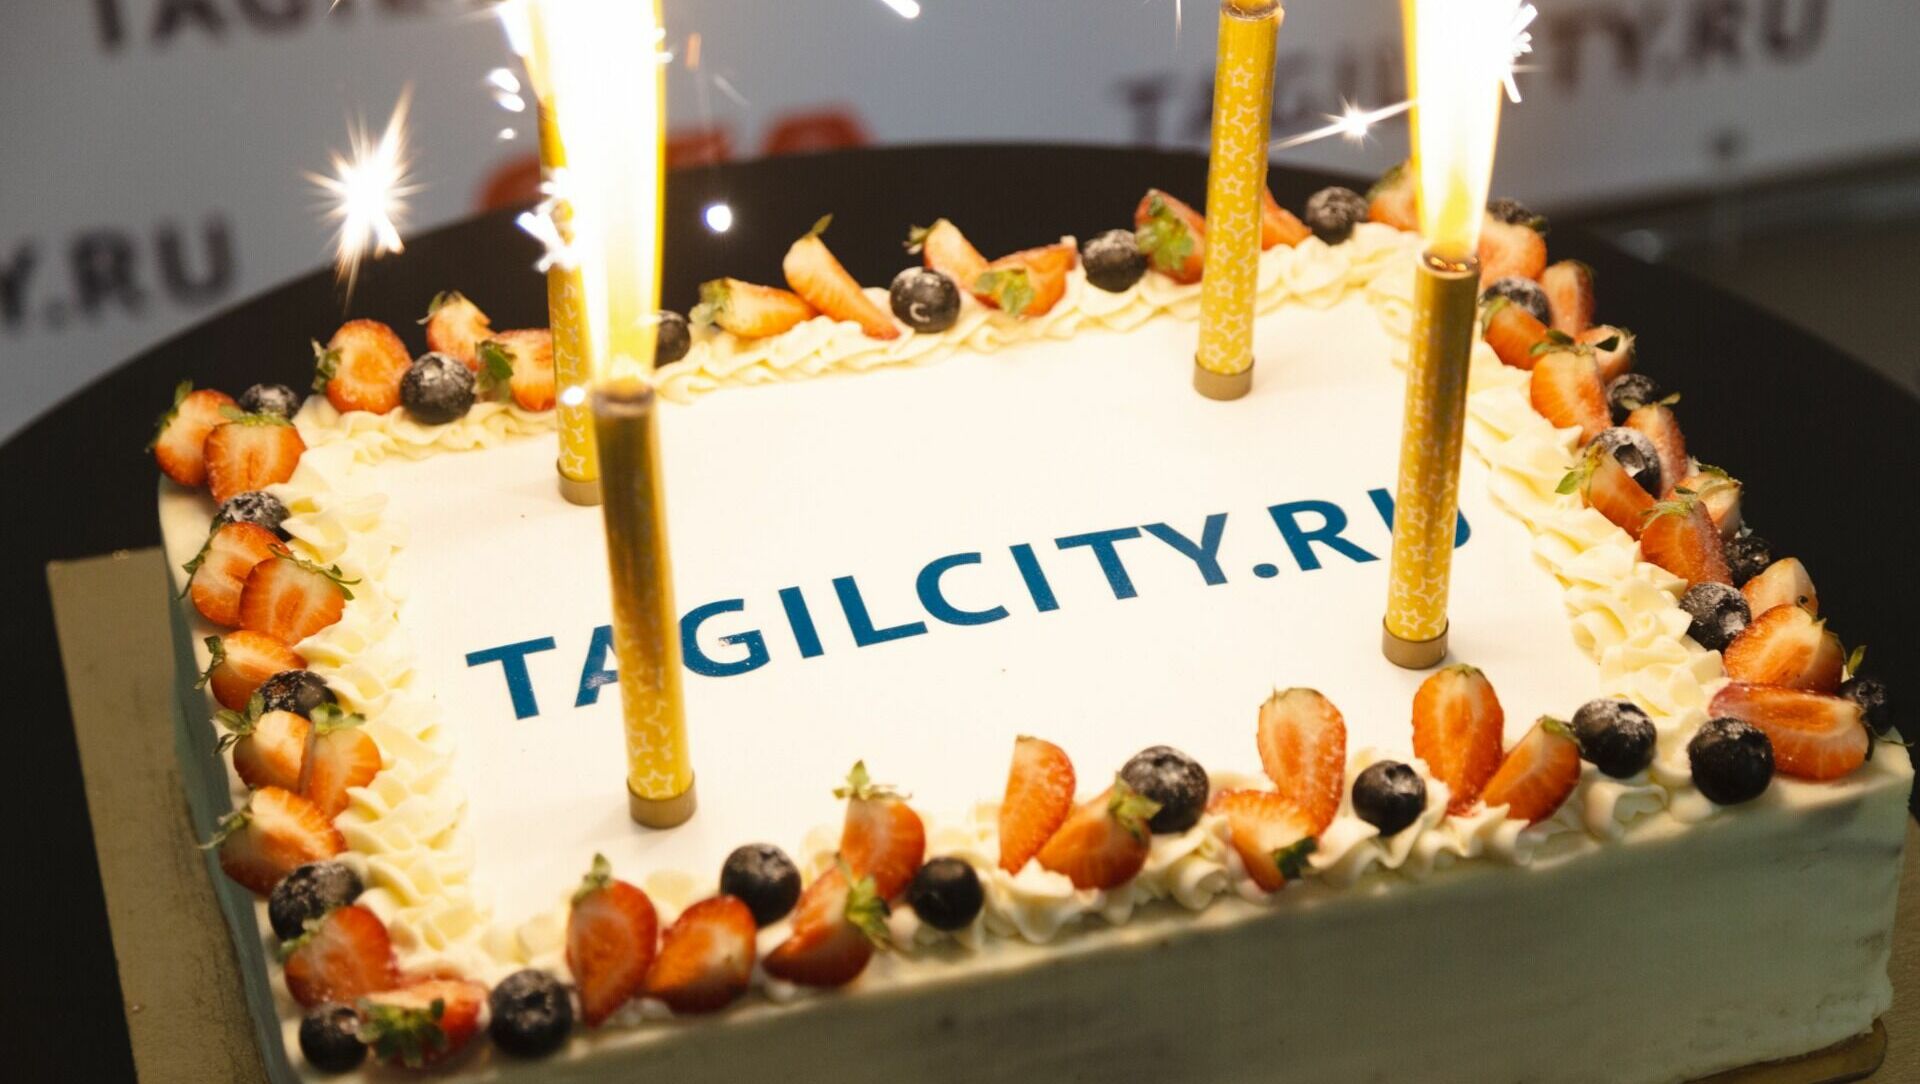 TagilCity.ru отпраздновал 15-летие в кругу партнеров и друзей